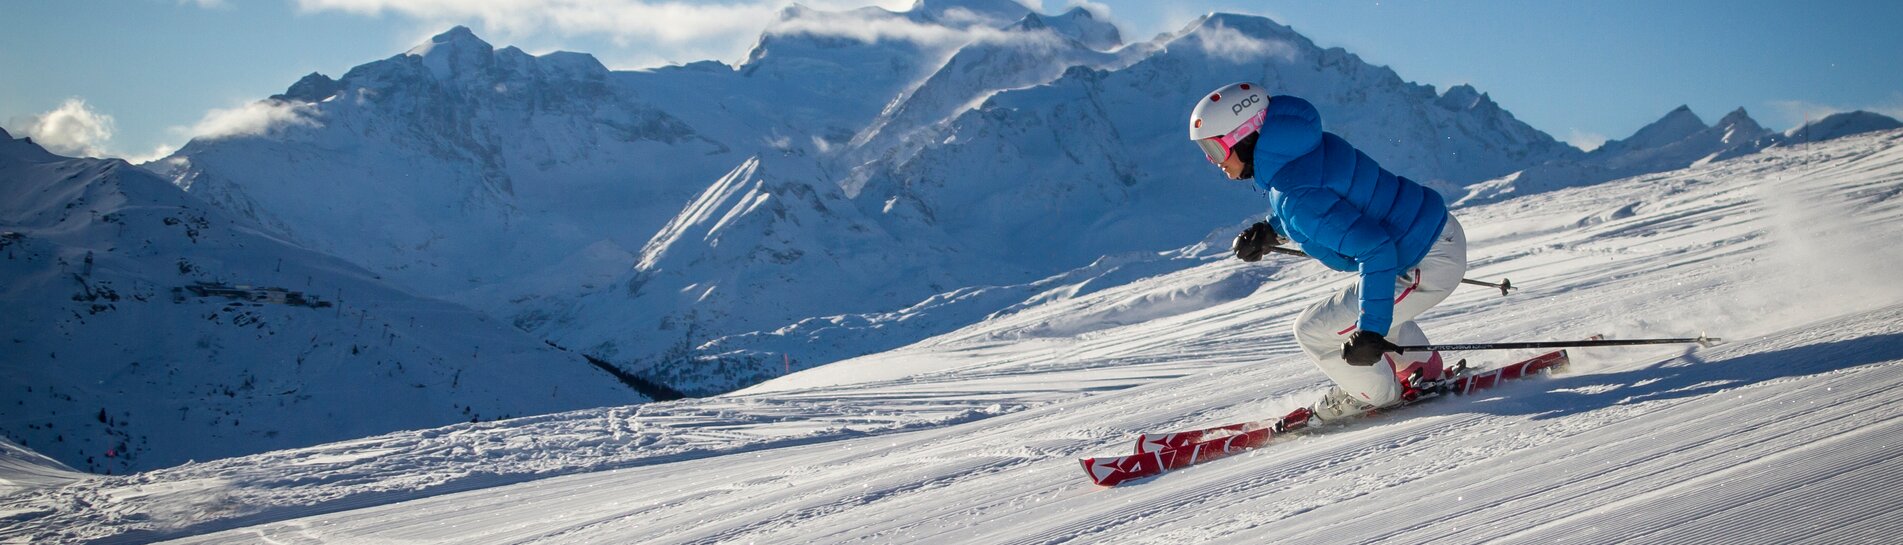 La Tzoumaz Skigebiet Schweiz